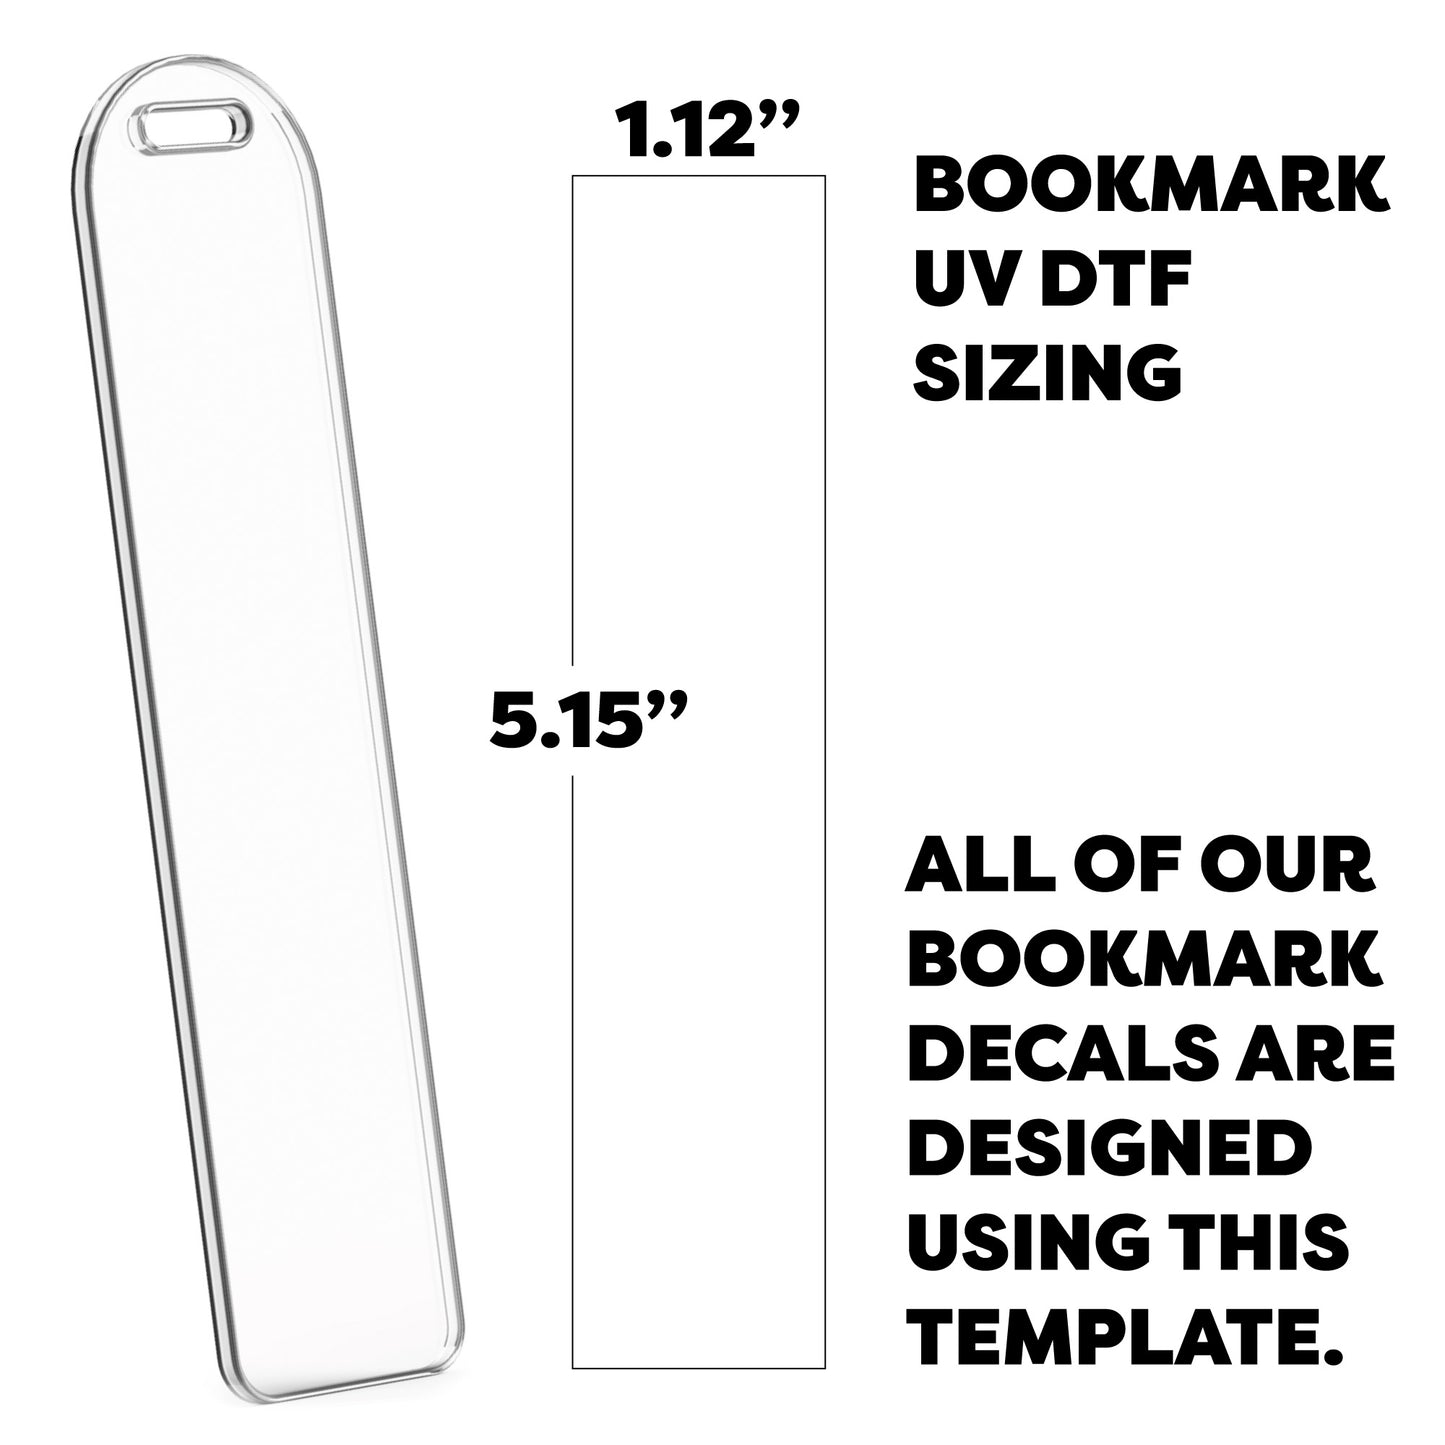 OOPSIES UV DTF | Blue Flower Bookmark Decal